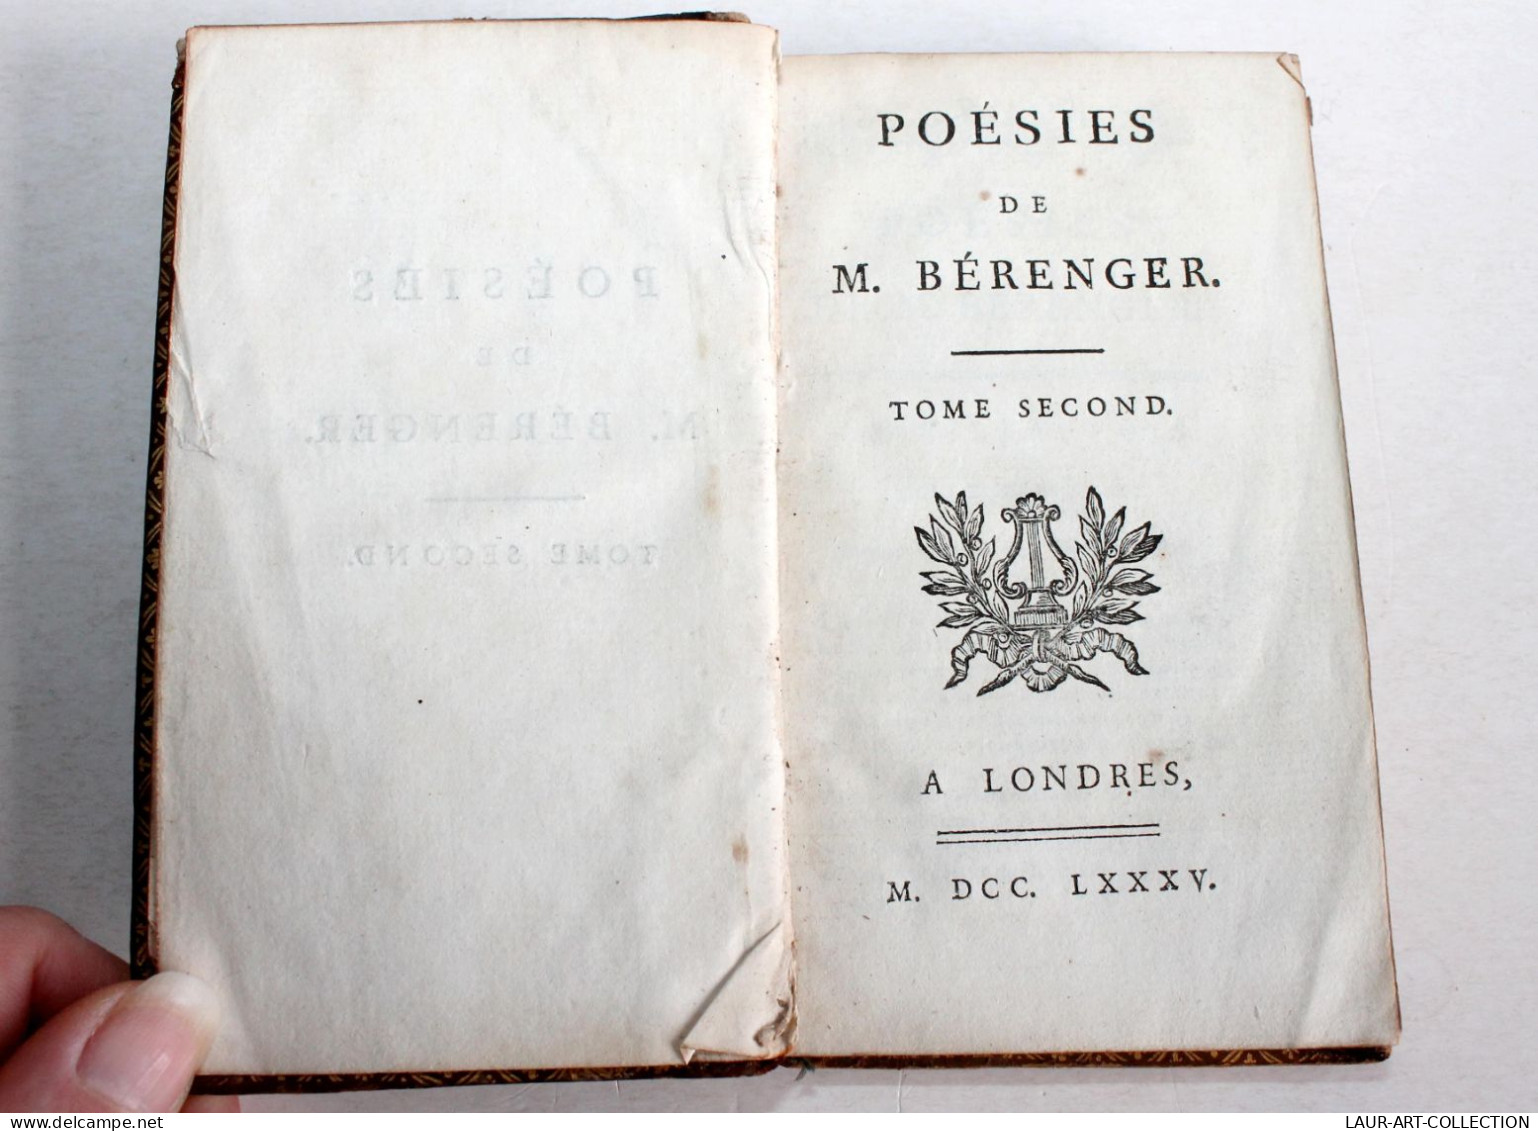 POESIES DE M. BERANGER TOME SECOND 1785 A LONDRES, LIVRE 18e CONTENANT 55 PIECES / ANCIEN LIVRE XVIIIe SIECLE (1803.132) - French Authors